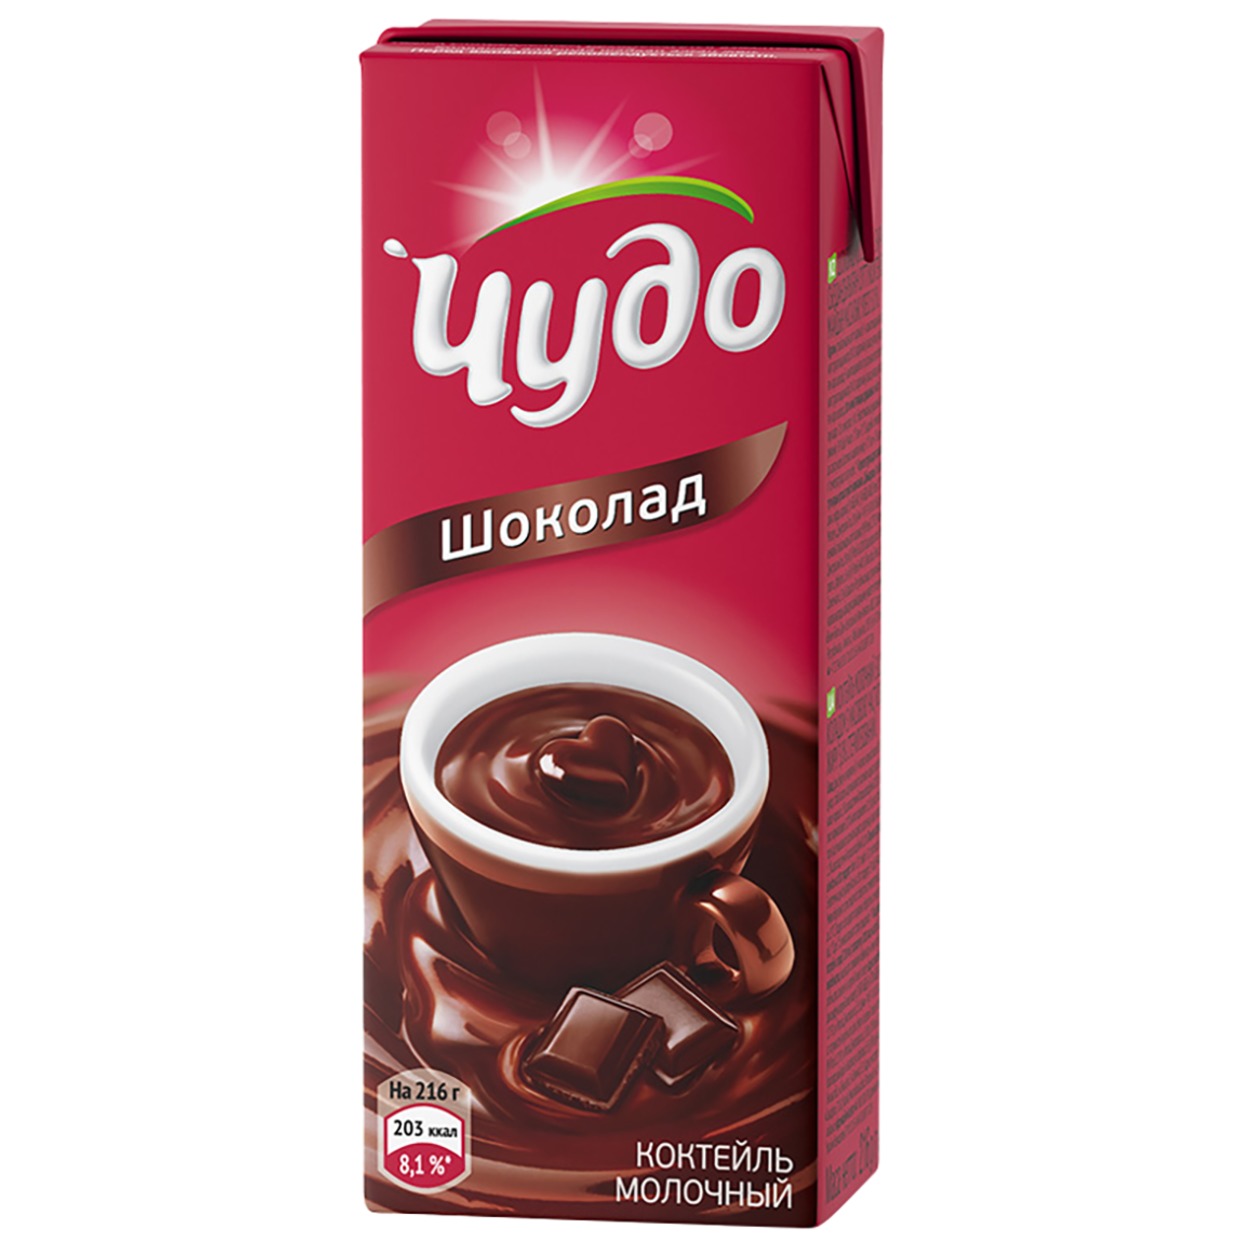 Коктейль молочный Чудо Шоколад 3% 200мл по акции в Пятерочке